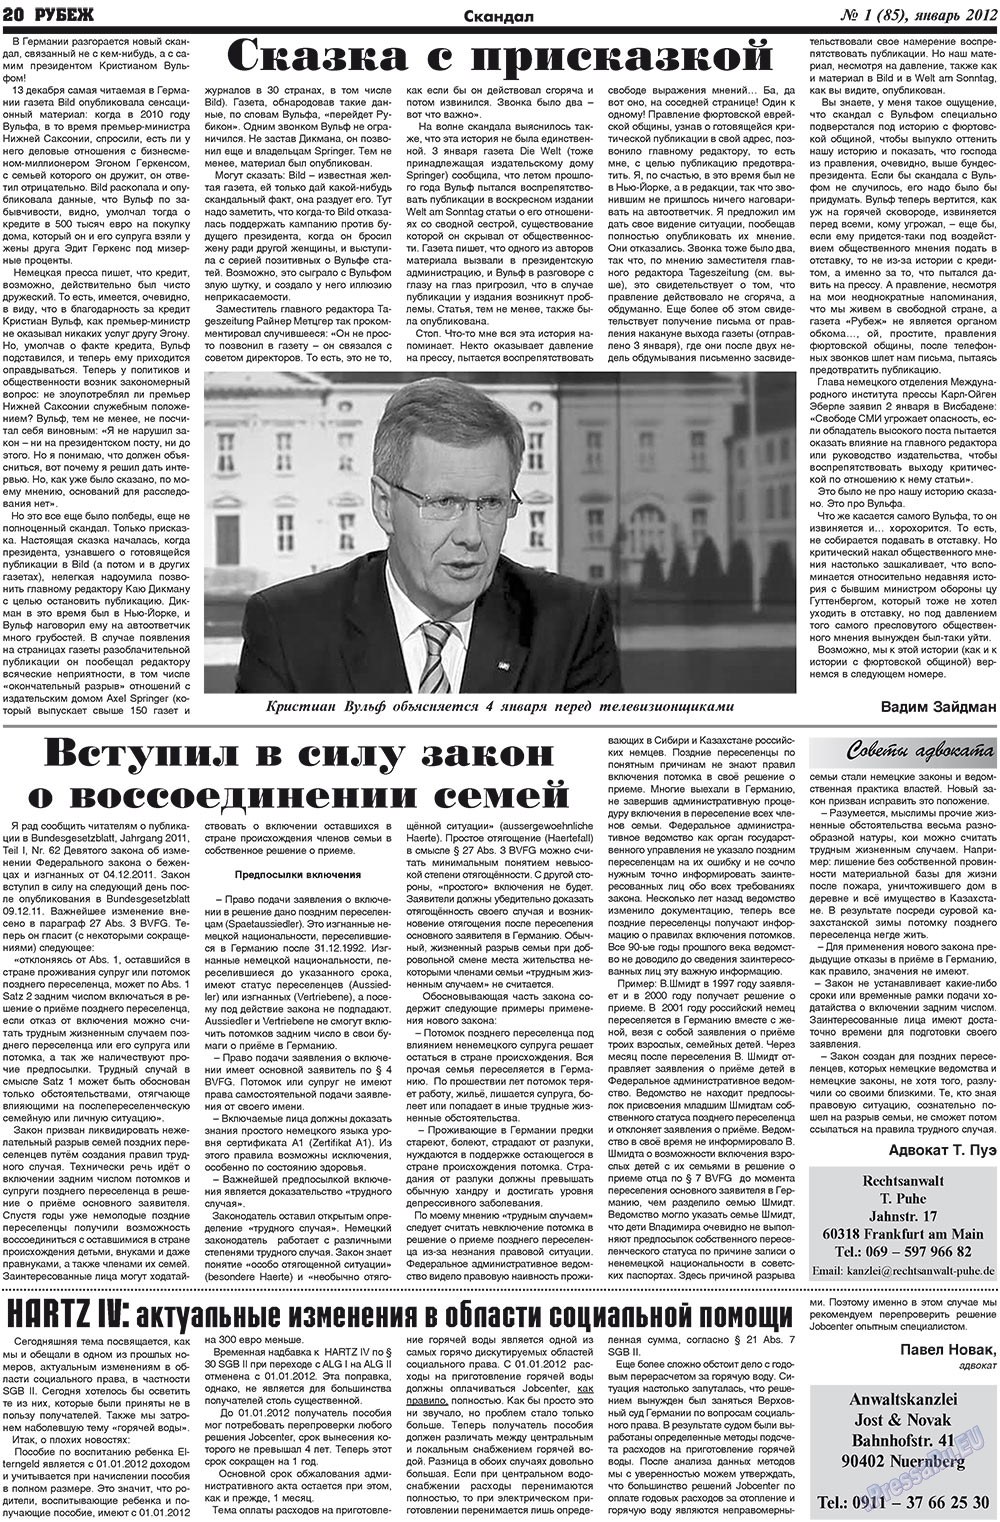 Рубеж (газета). 2012 год, номер 1, стр. 20